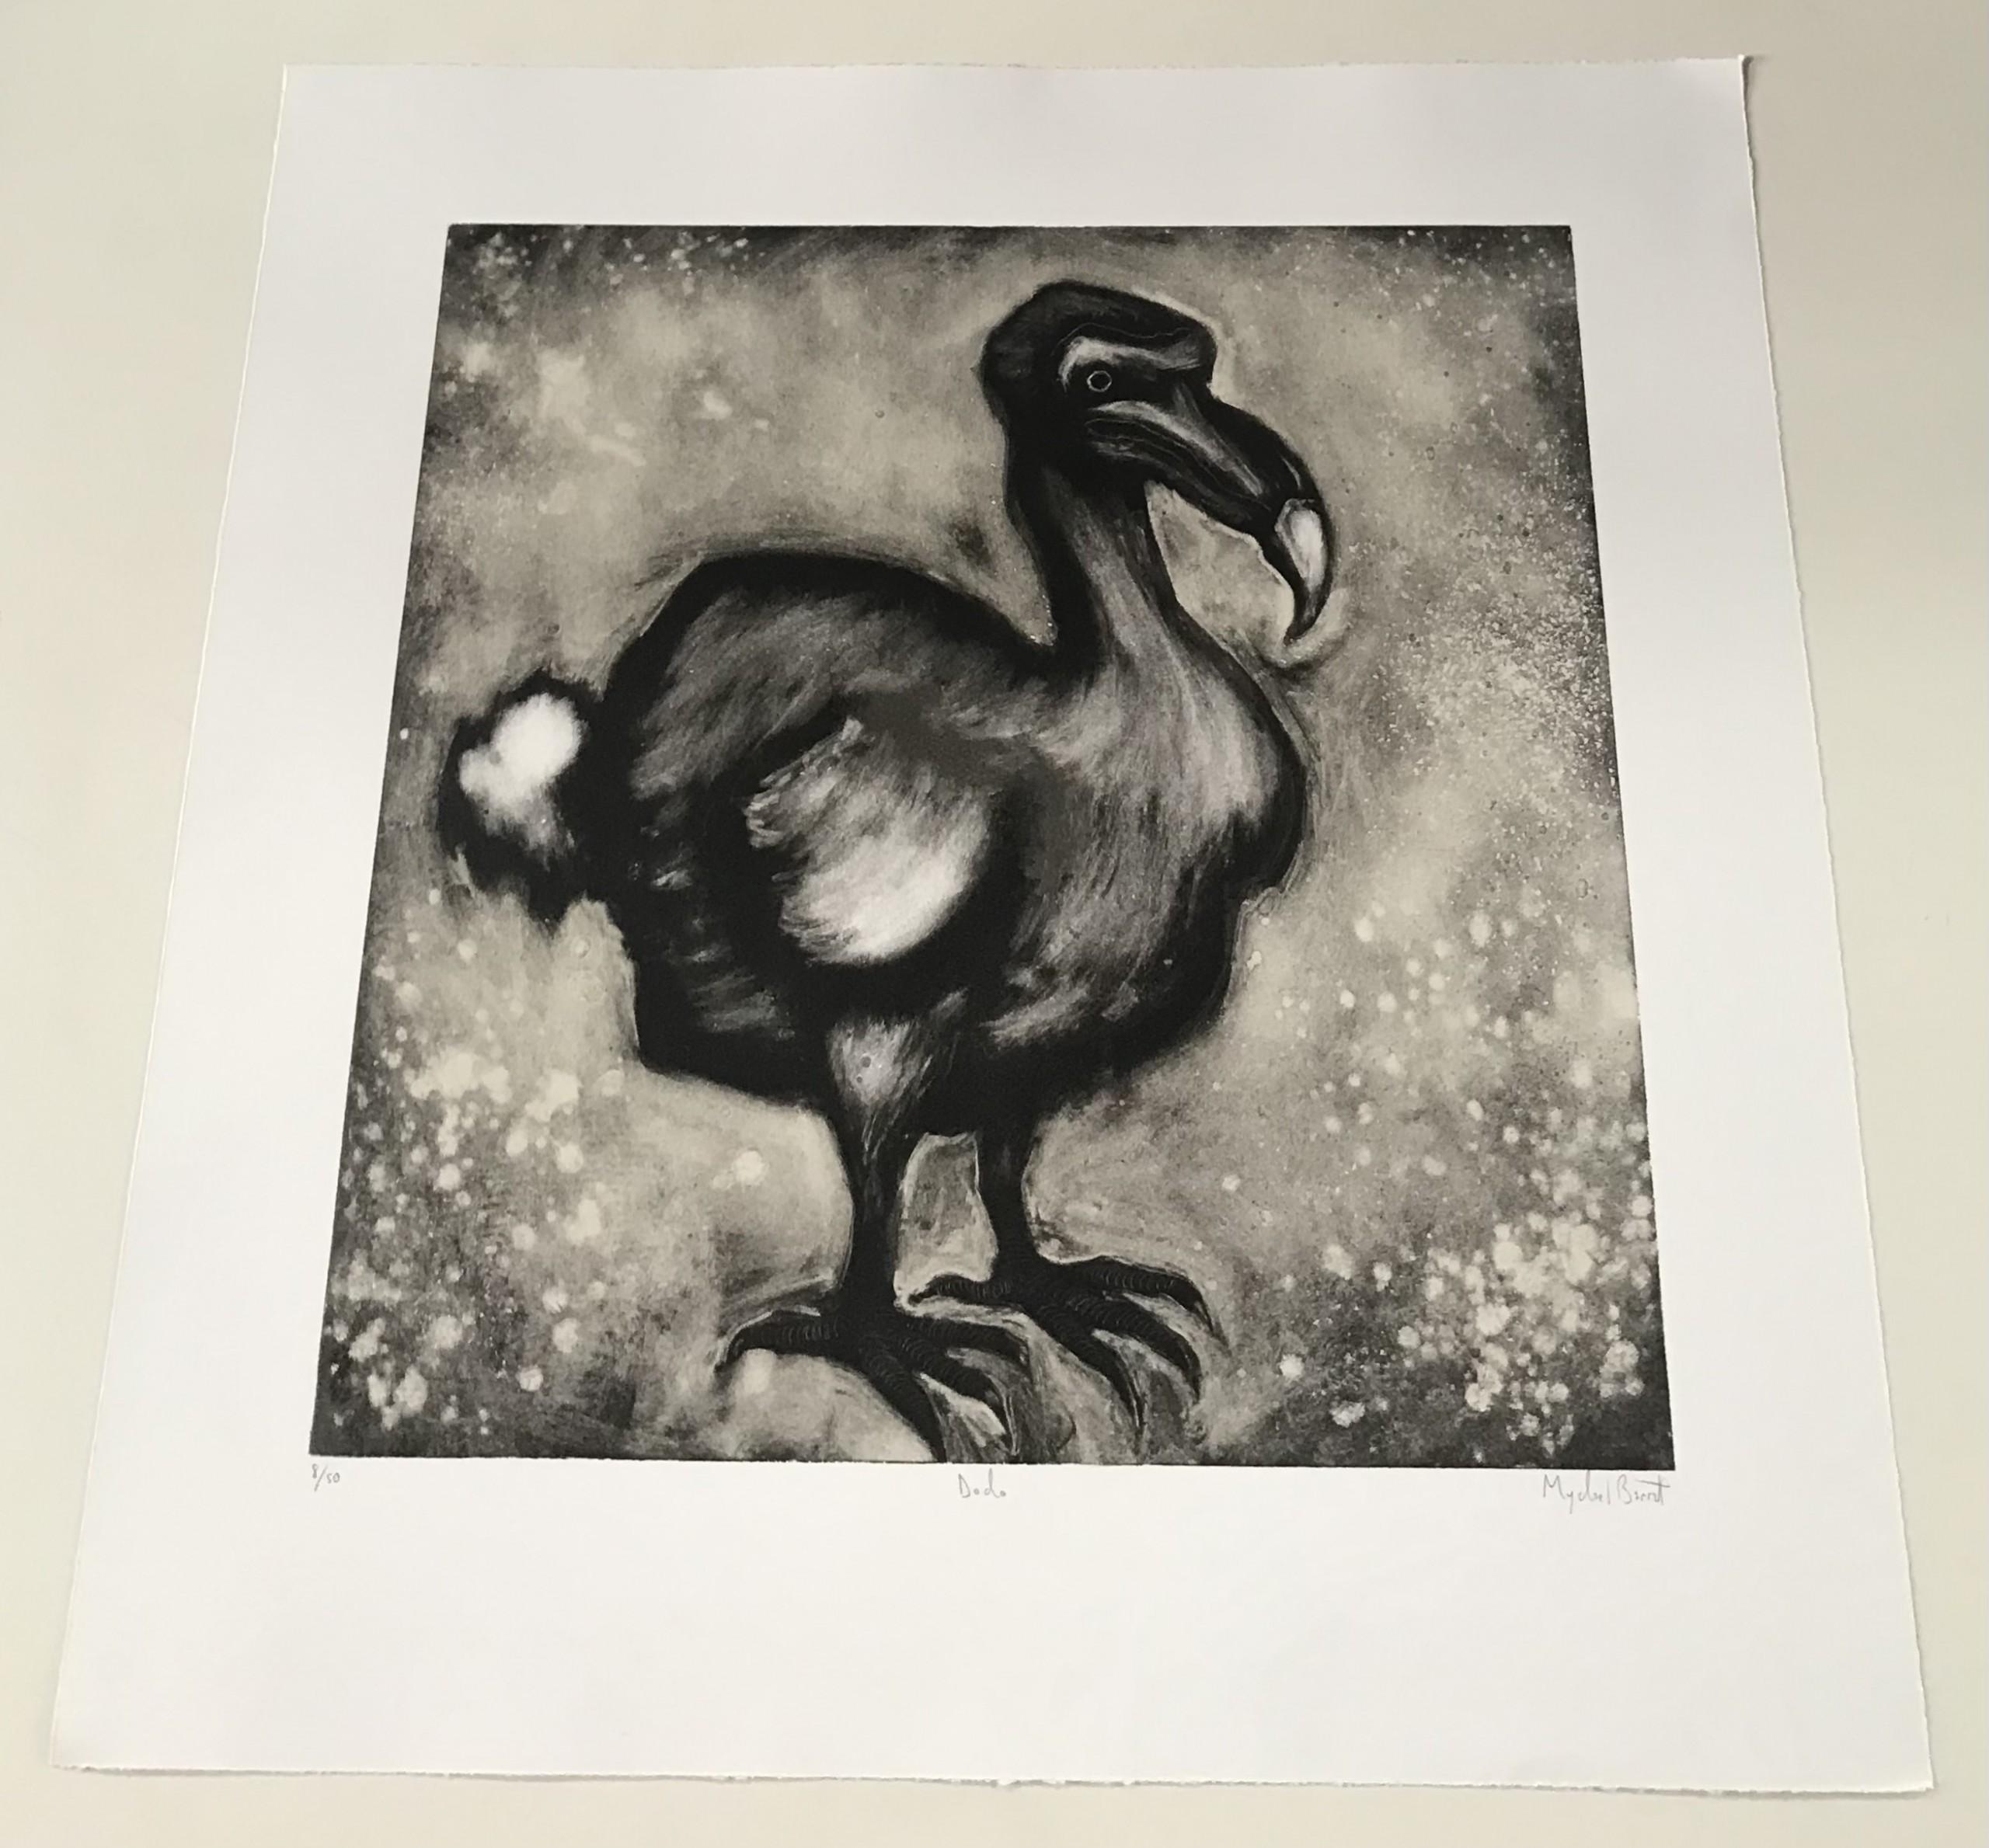 Dodo des Künstlers Mychael Barratt ist ein Druck in limitierter Auflage. Die Szene stellt einen Dodo dar. Durch die Verwendung von MATERIAL erhält der Vogel weichere Züge. Das macht die Arbeit eleganter.

Originalarbeiten von Mychael Barratt sind